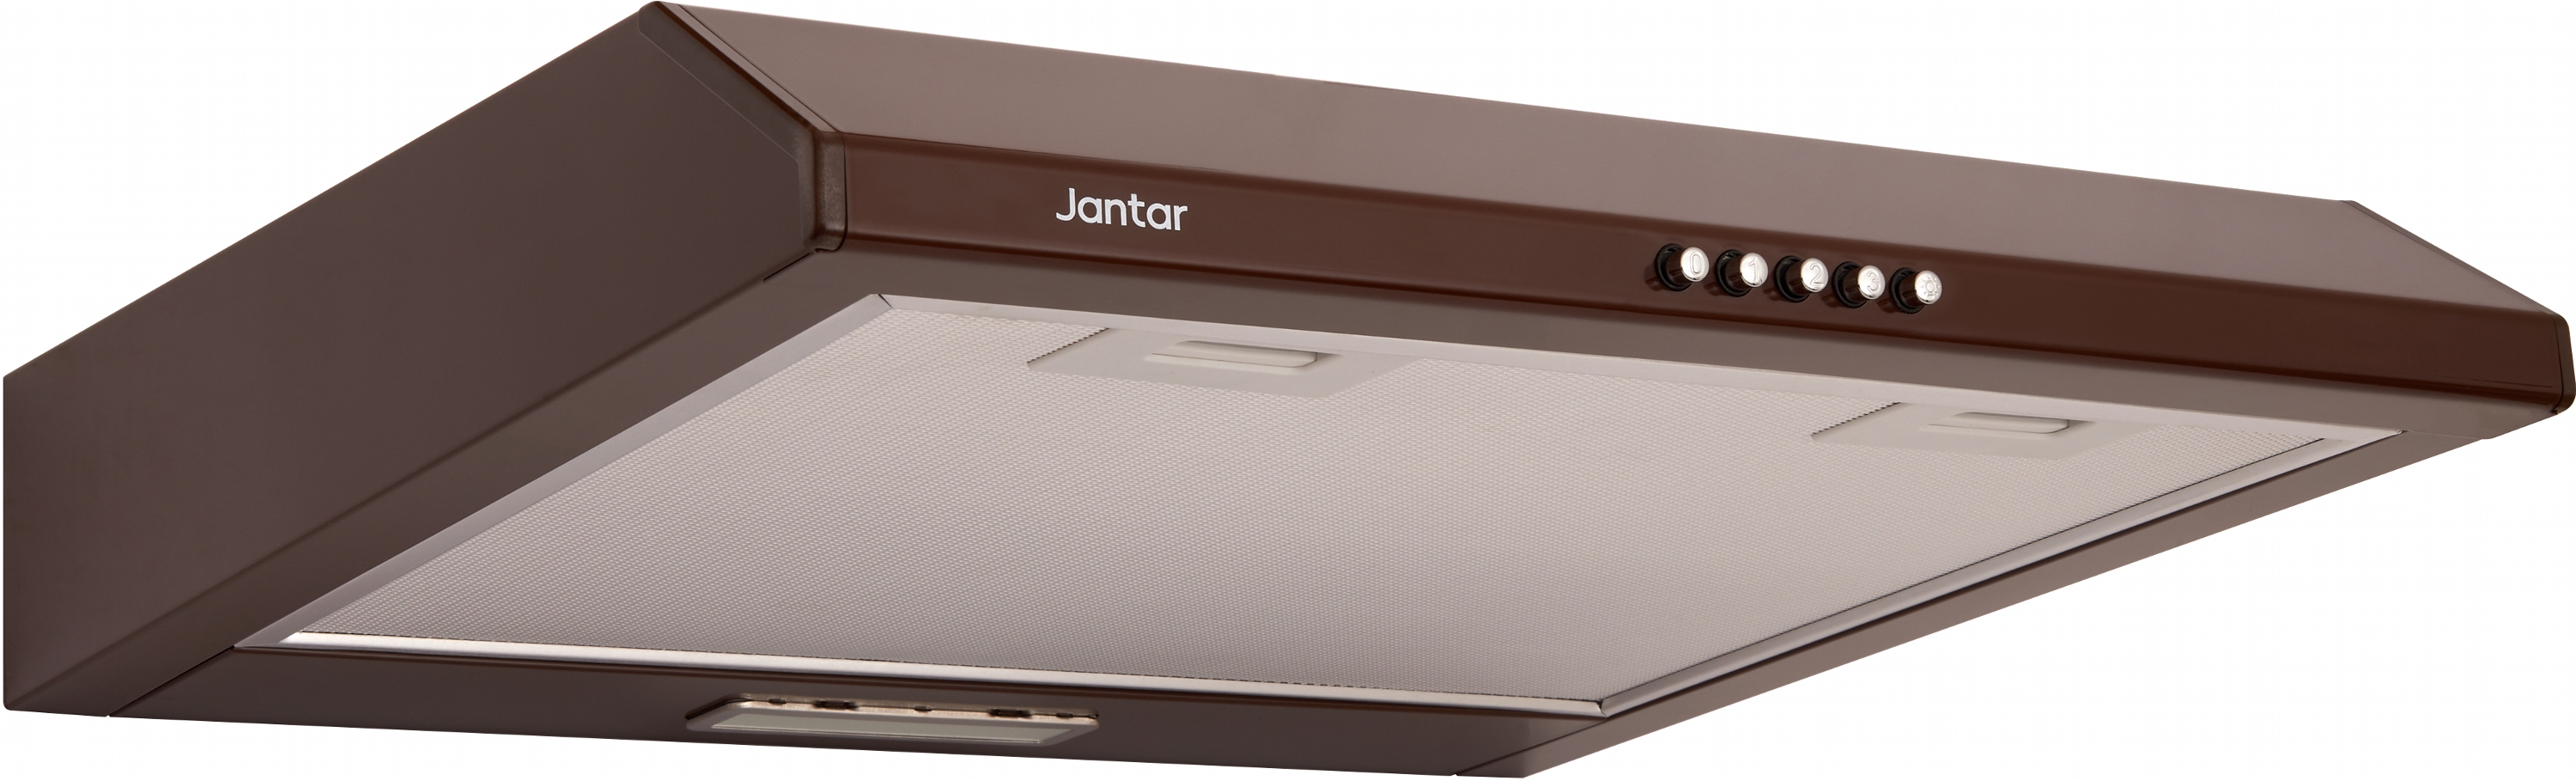 Купить вытяжка jantar с алюминиевым фильтром Jantar ST I LED 60 BR в Киеве